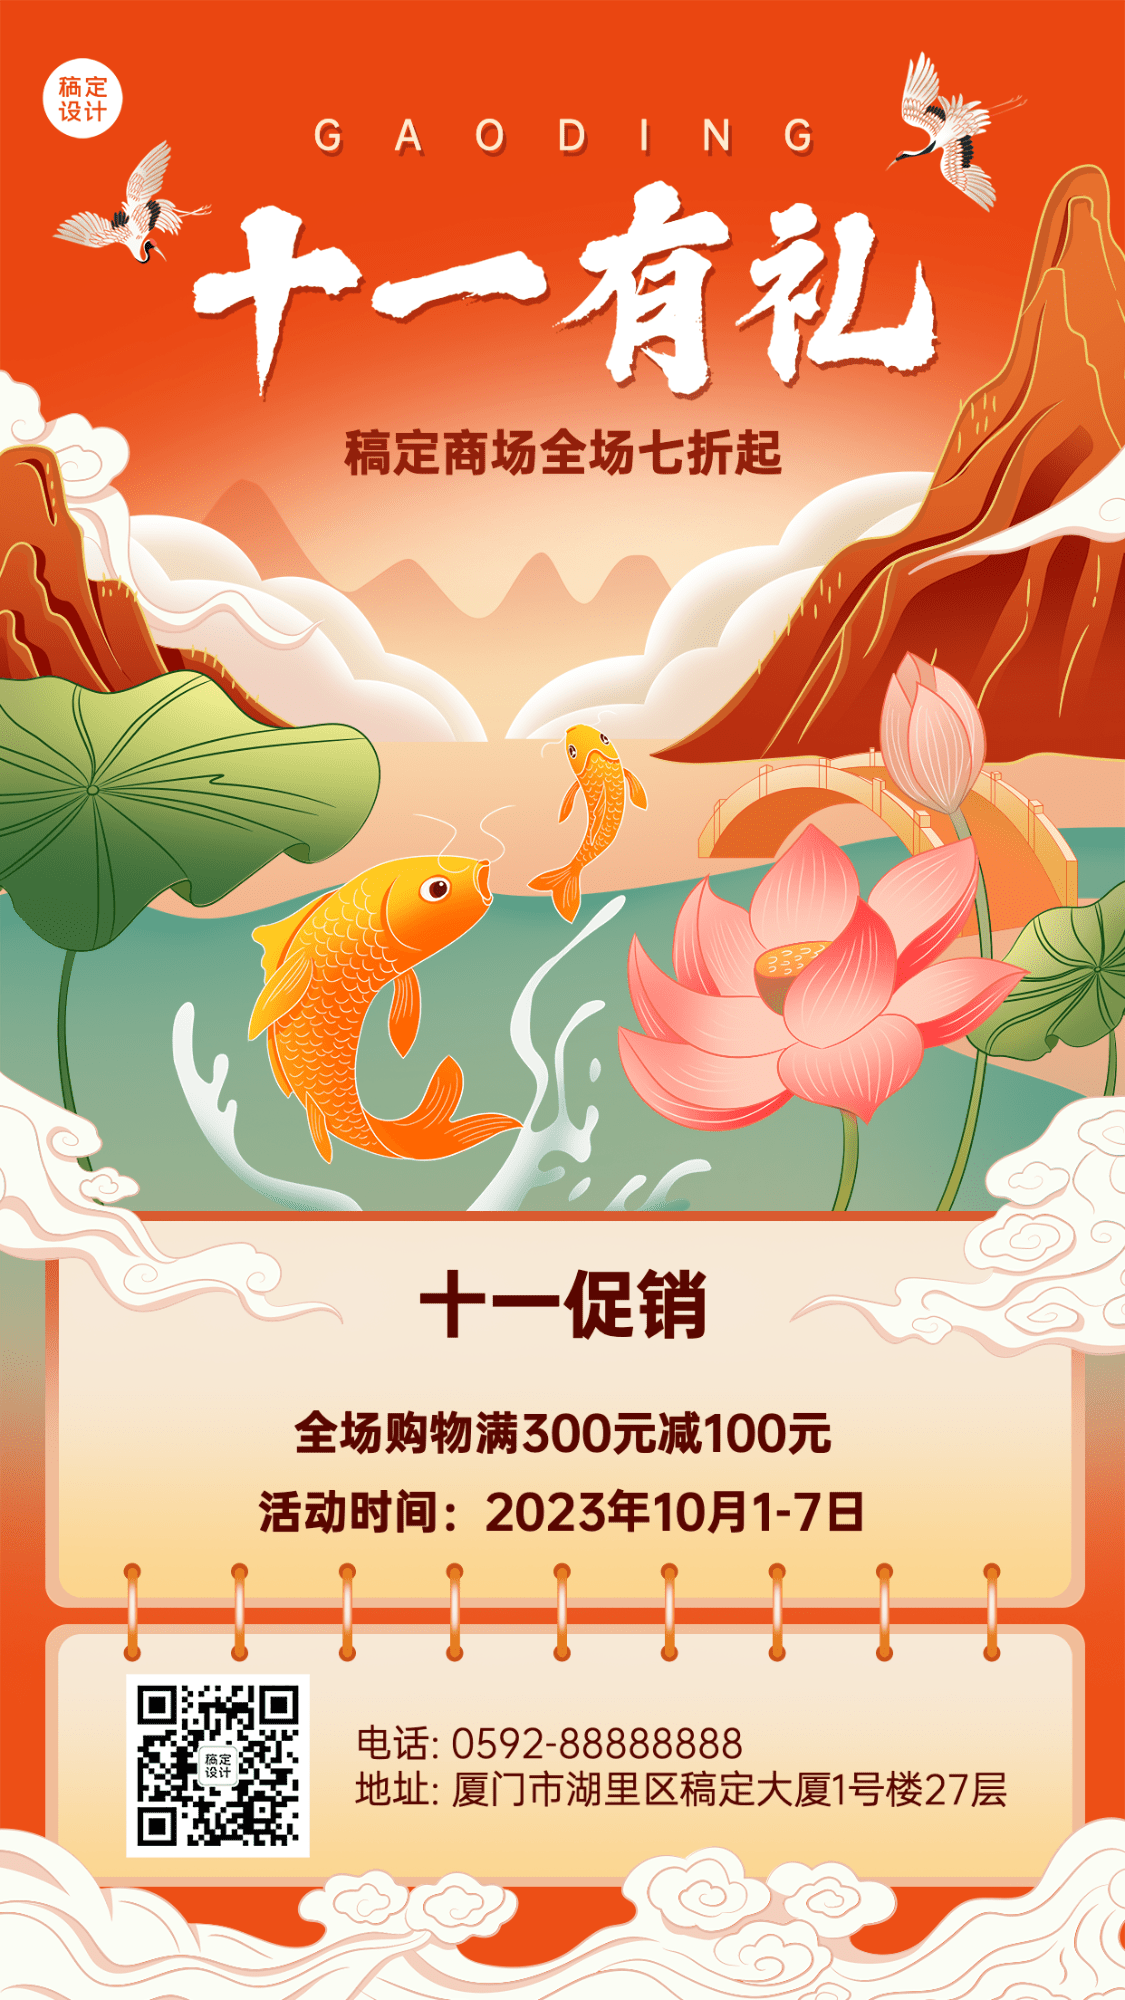 十一黄金周国庆节日营销插画手机海报